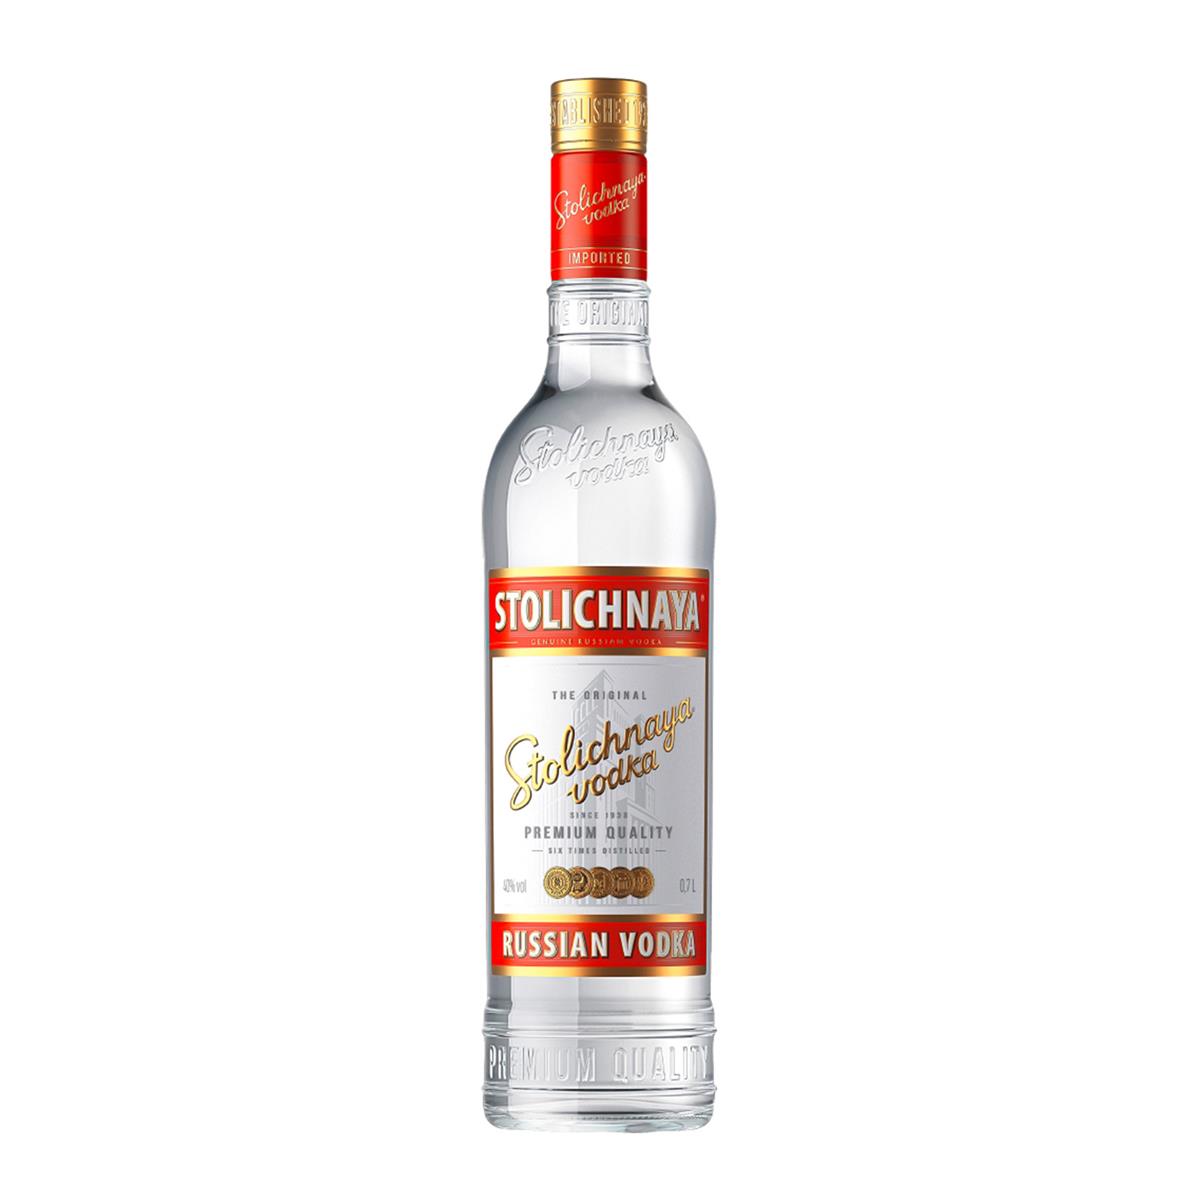 Zes Onbelangrijk Incarijk Stolichnaya Vodka online bestellen | BILLA